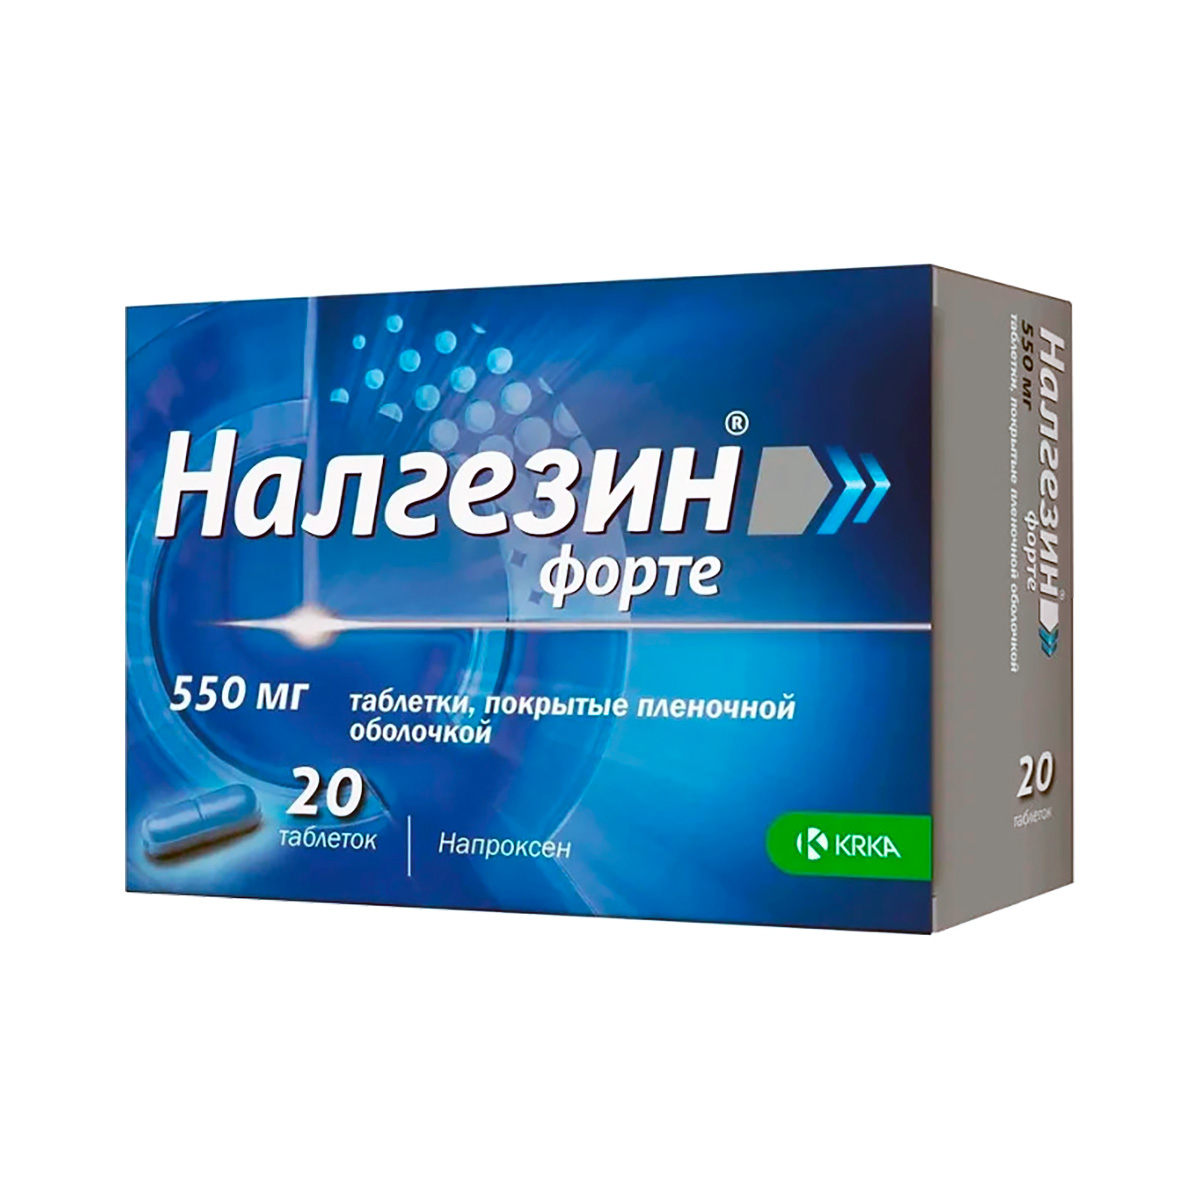 Налгезин Форте 550 мг таблетки покрытые пленочной оболочкой 20 шт